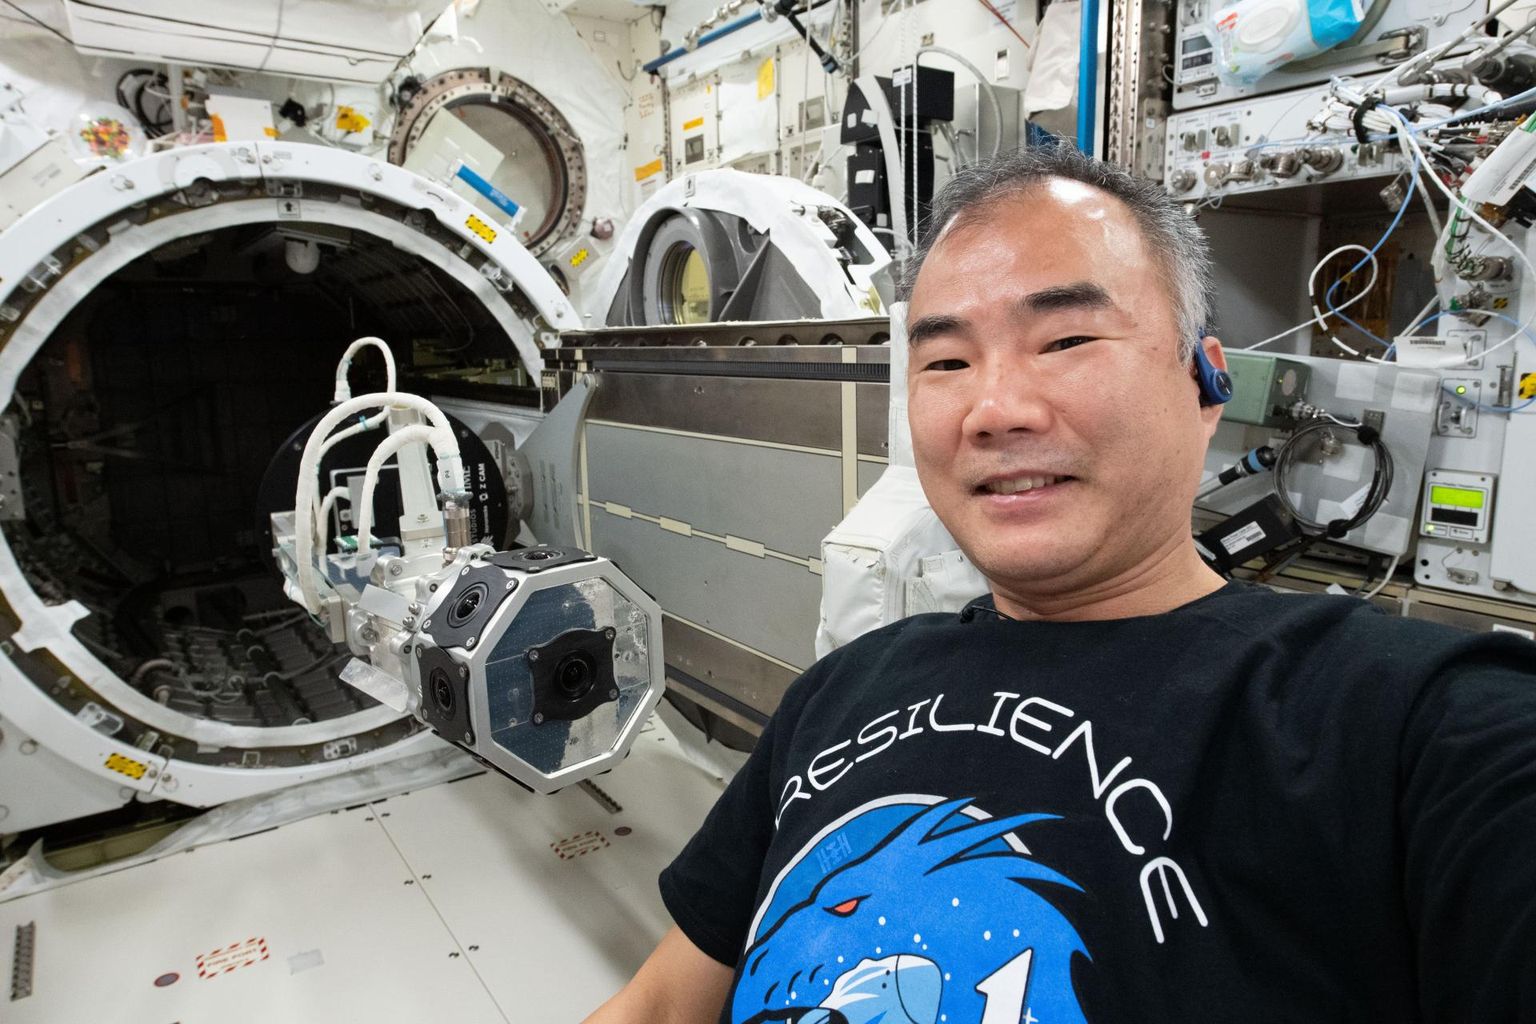 Jaapani astronaut Sōichi Noguchi rahvusvahelises kosmosejaamas. Tema pidi orbiidile lähetama ühe kahest Jaapani tehiskaaslasest, mis valmis koostöös Myanmari valitsusega. Praegu on see ootele pandud Kibo moodulis (pildil avatud luugiga).